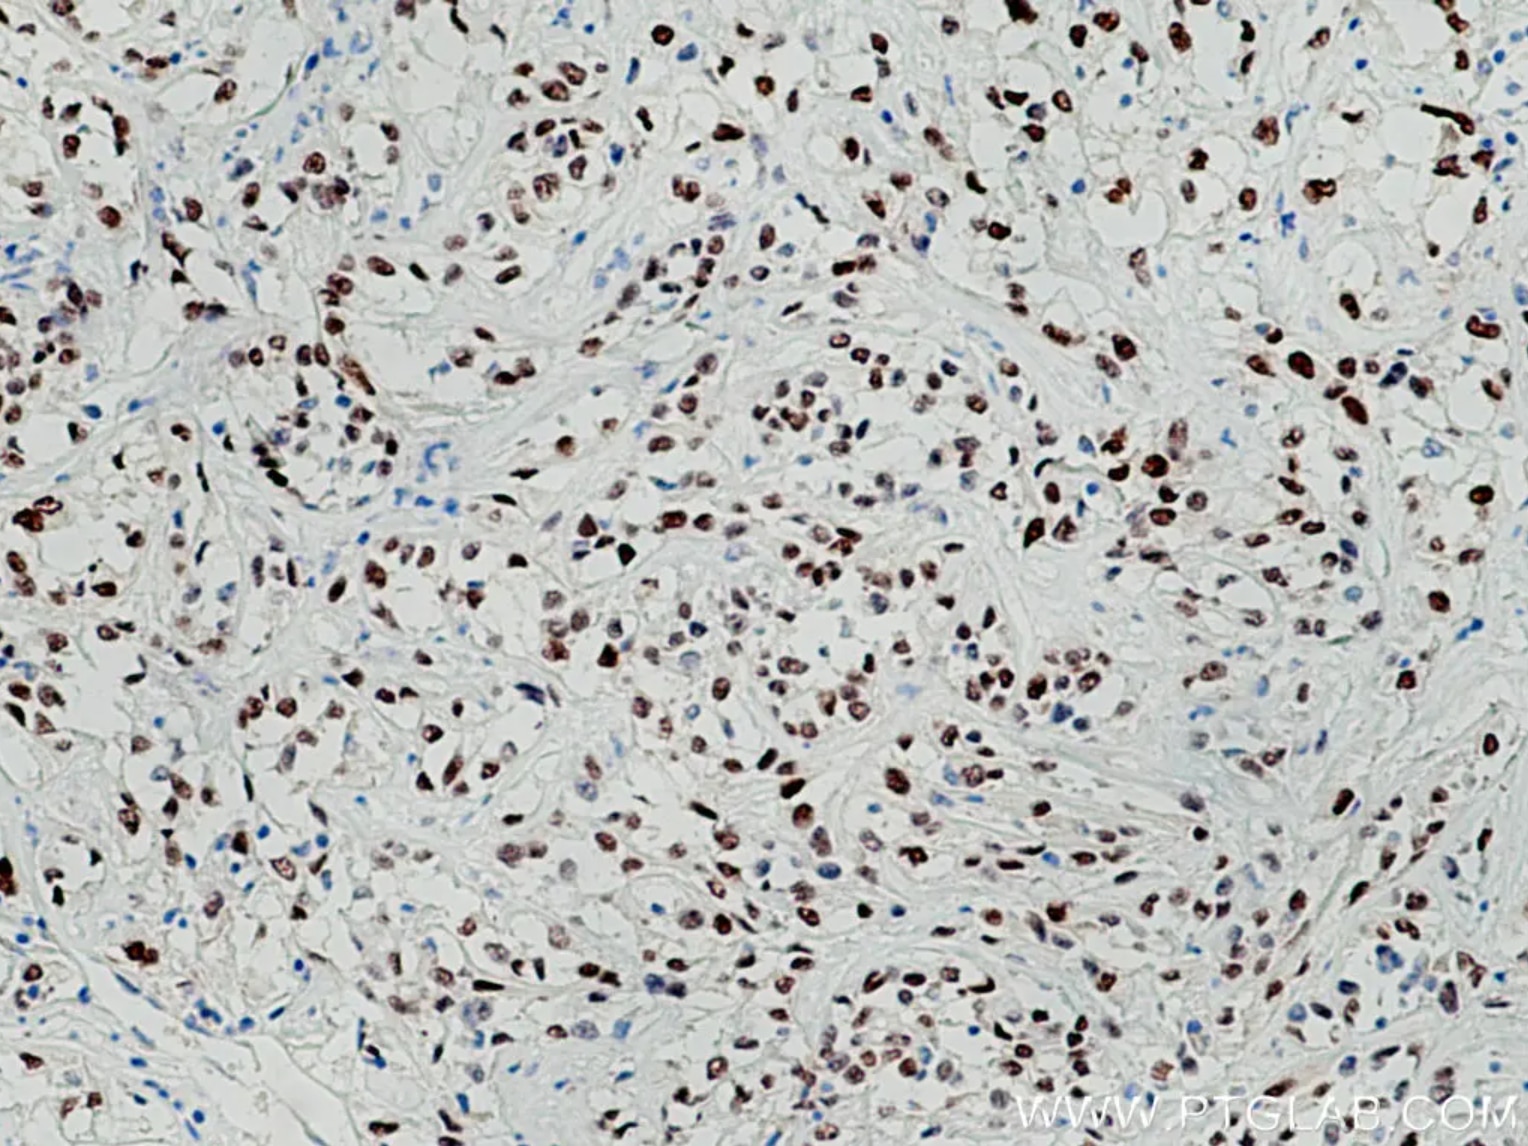 PAX8抗体を使用したパラフィン包埋ヒト腎細胞癌組織スライドの免疫組織化学染色。